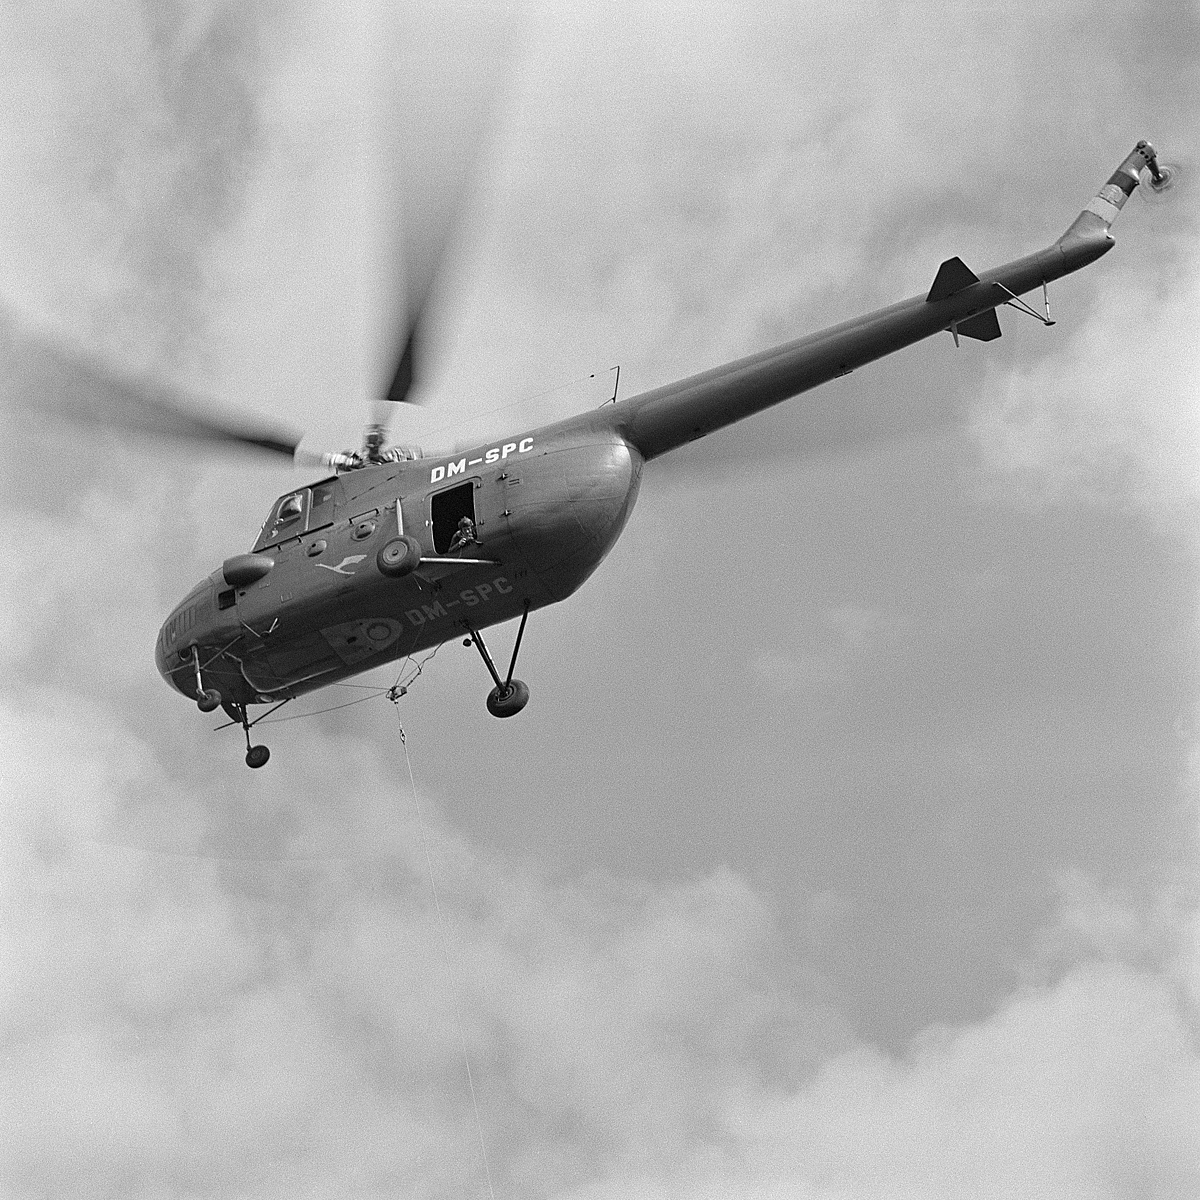 Mi-4   DM-SPC